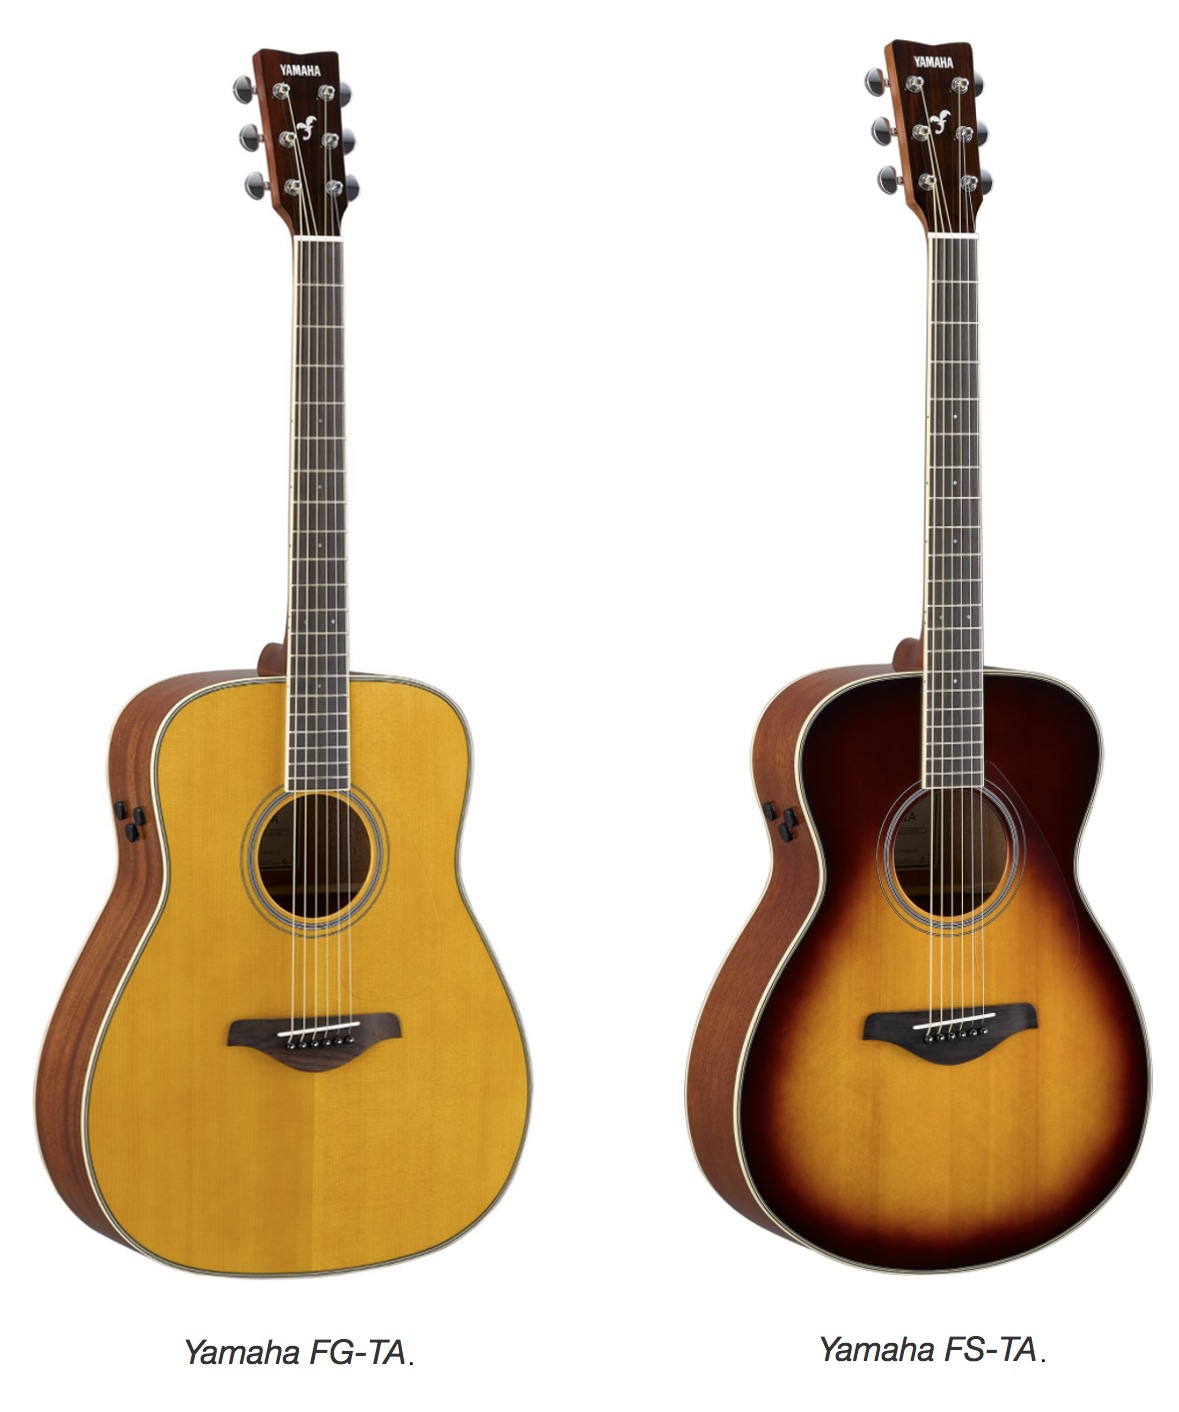 Two Yamaha guitars.